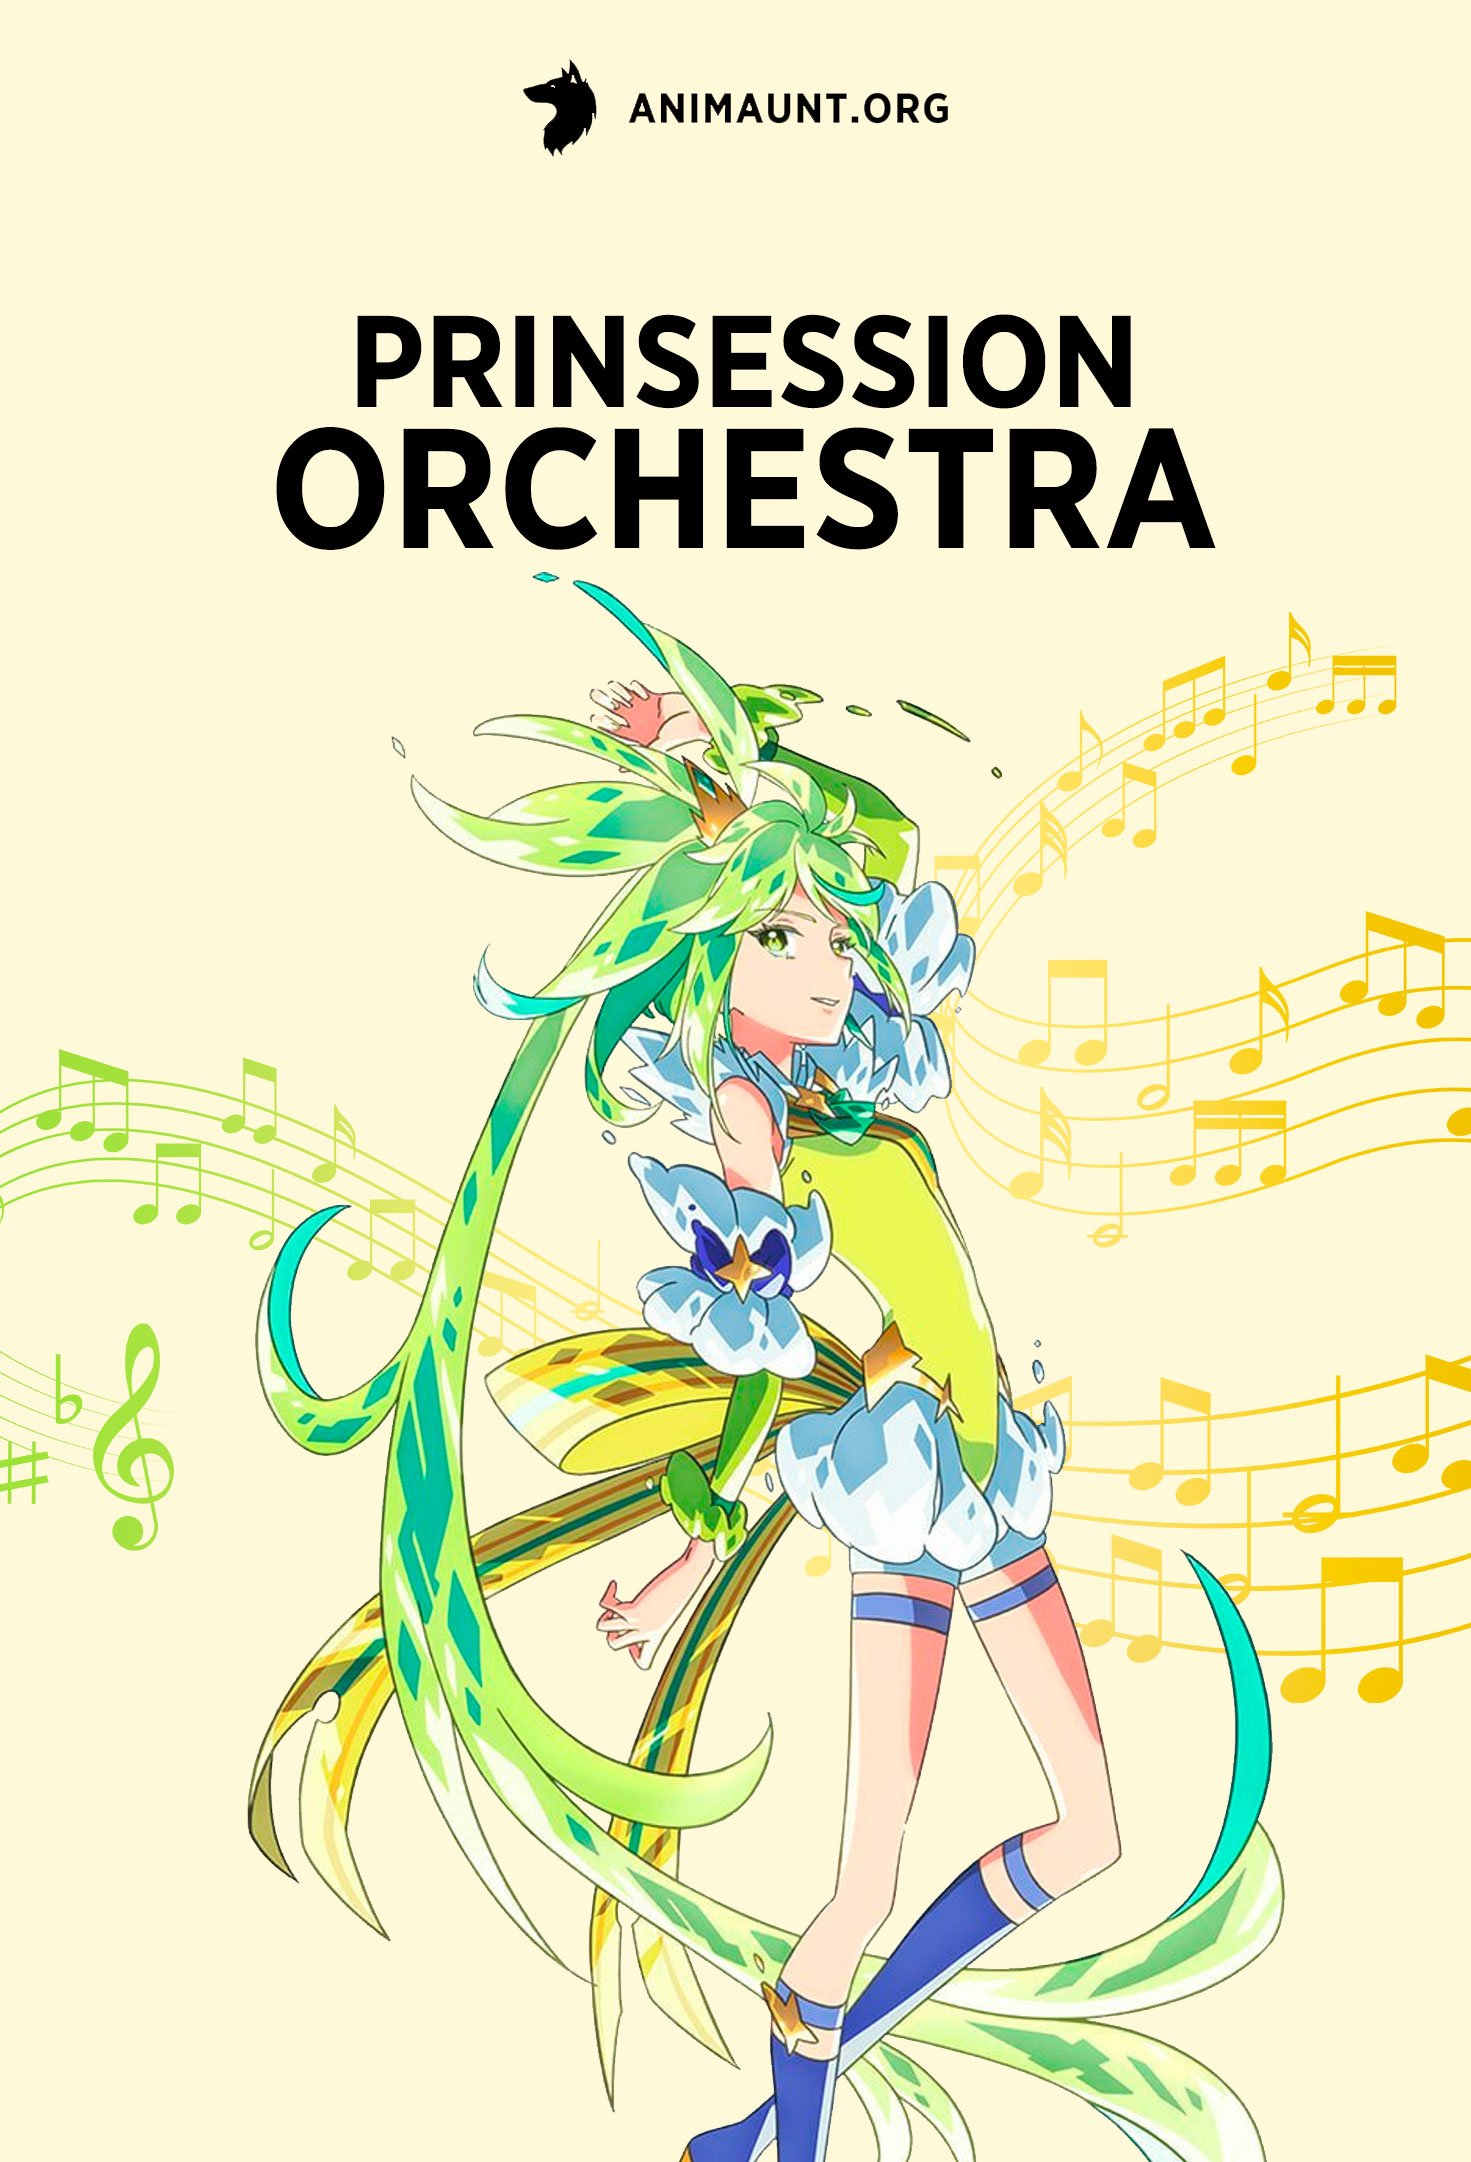 Prinsession Orchestra